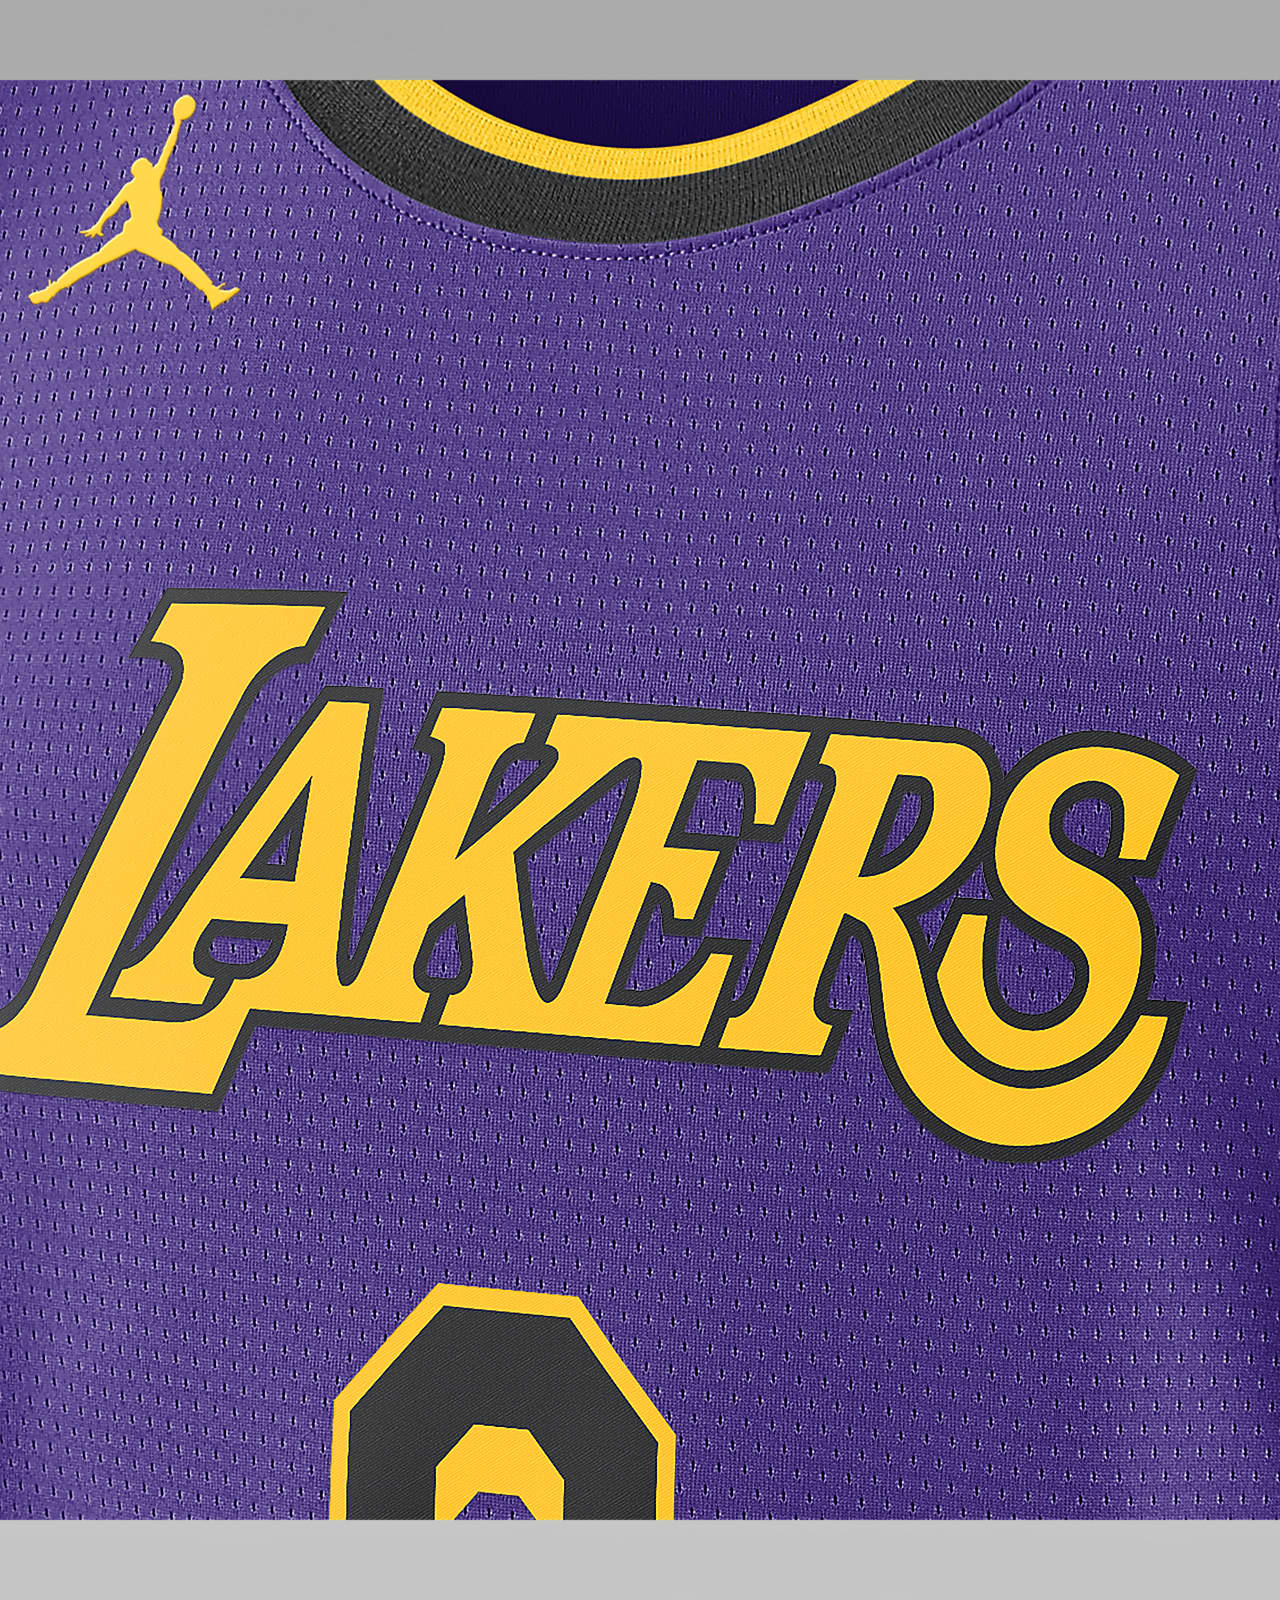 Nike Basketball Jordan LA Lakers NBA Swingman statement jersey in purple